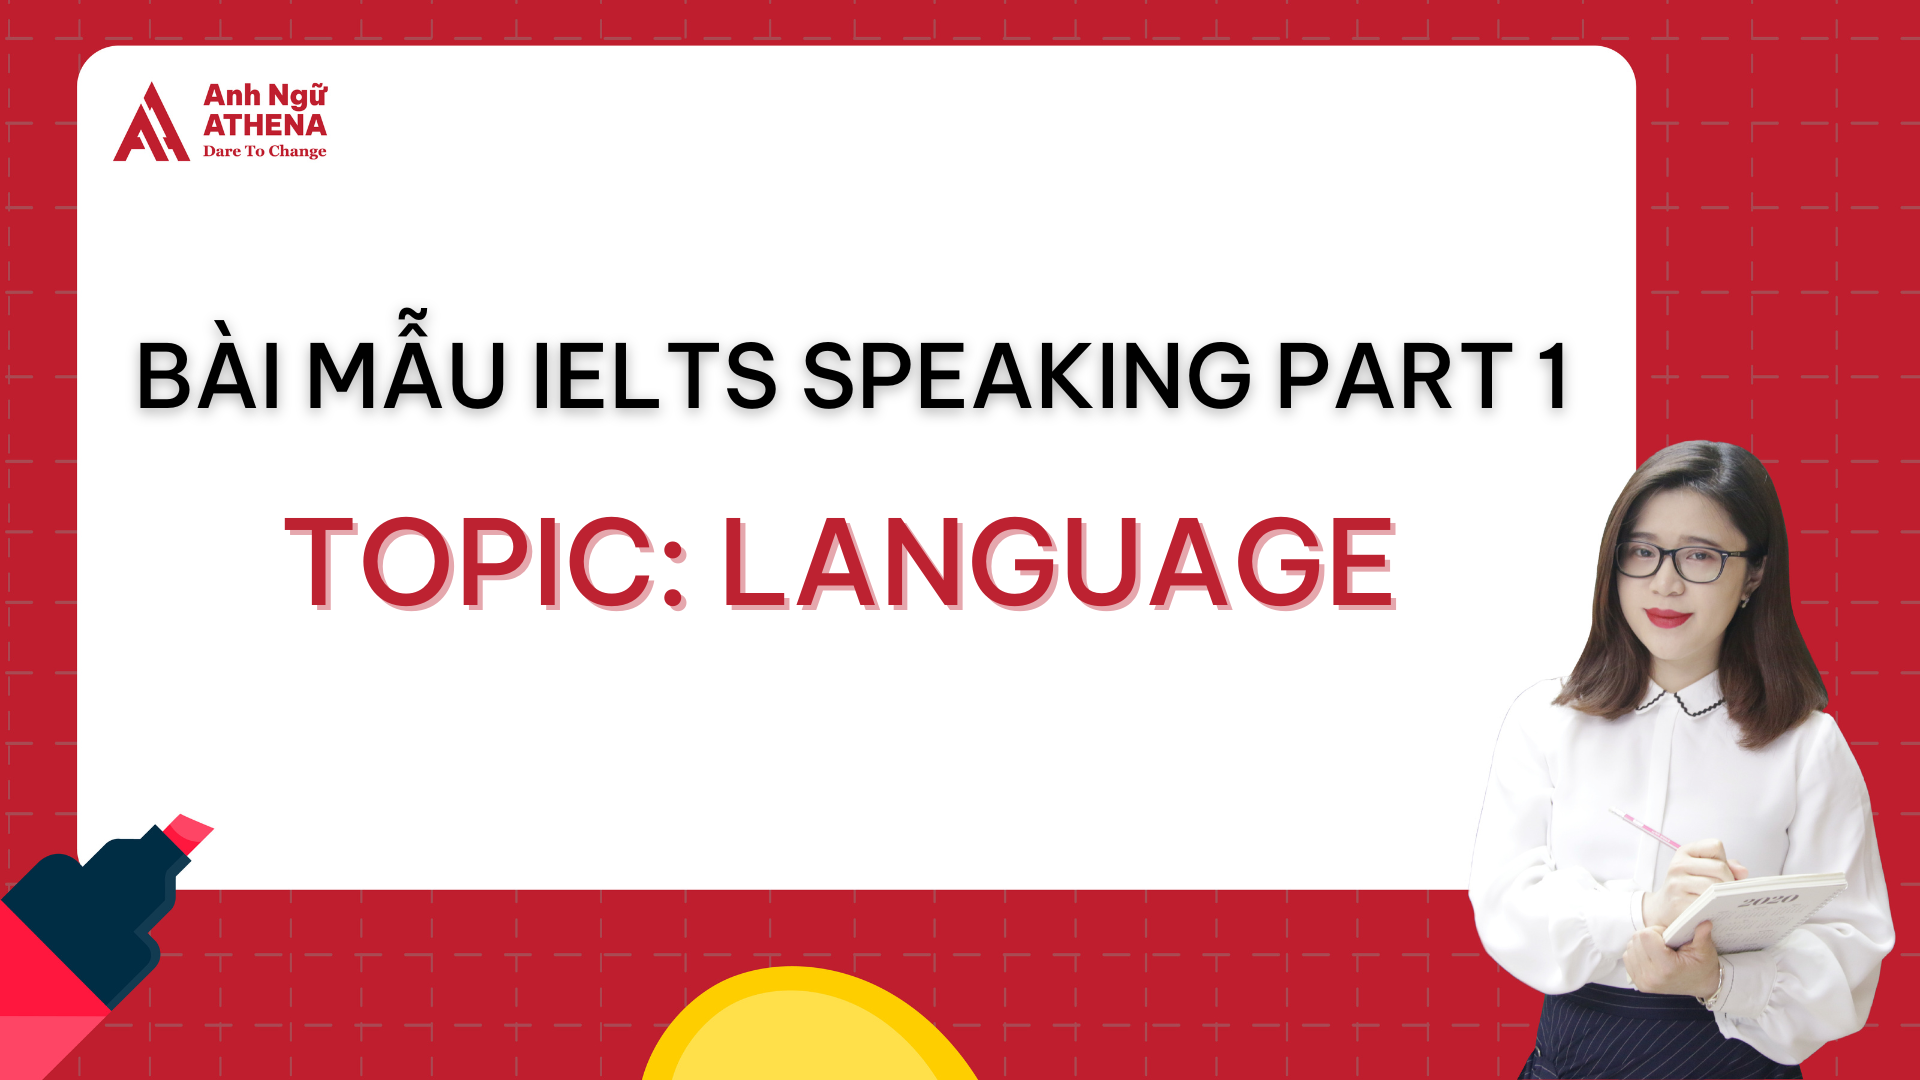 Bài mẫu IELTS Speaking Part 1 - Topic: Language